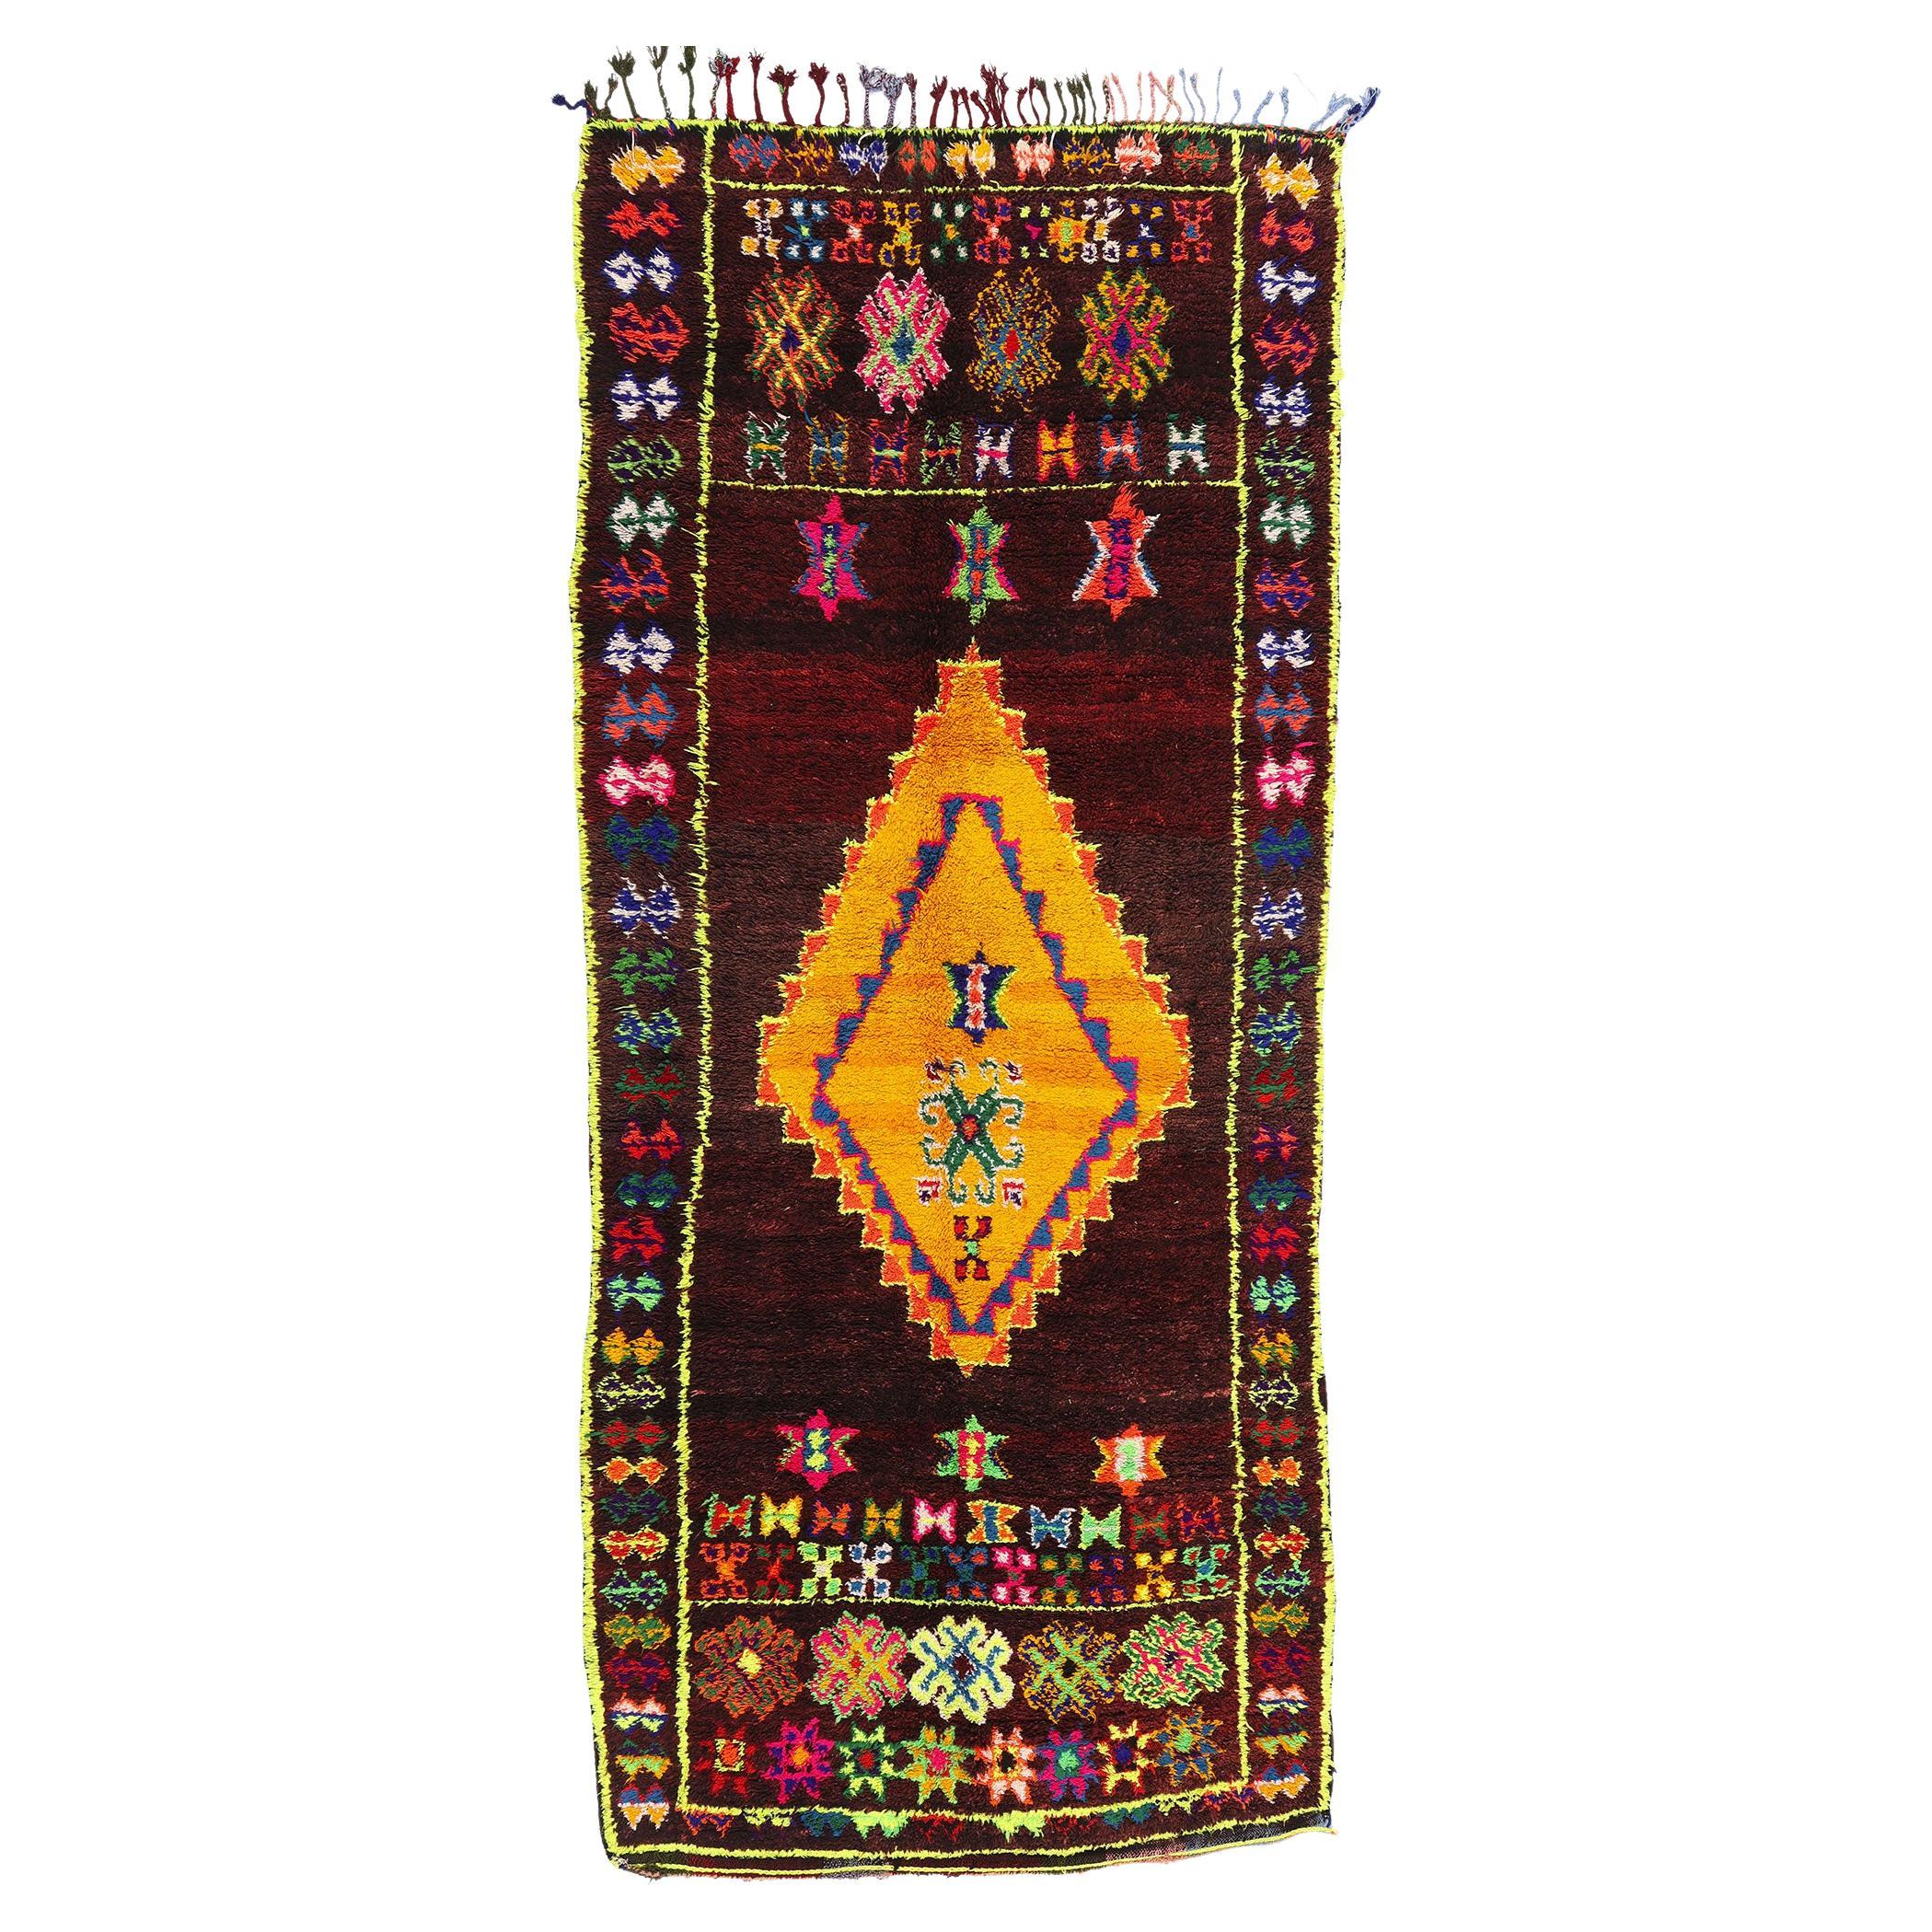 Vintage Beni MGuild Marokkanischer Teppich, kühner Boho-Stil trifft auf Maximalismus im Angebot